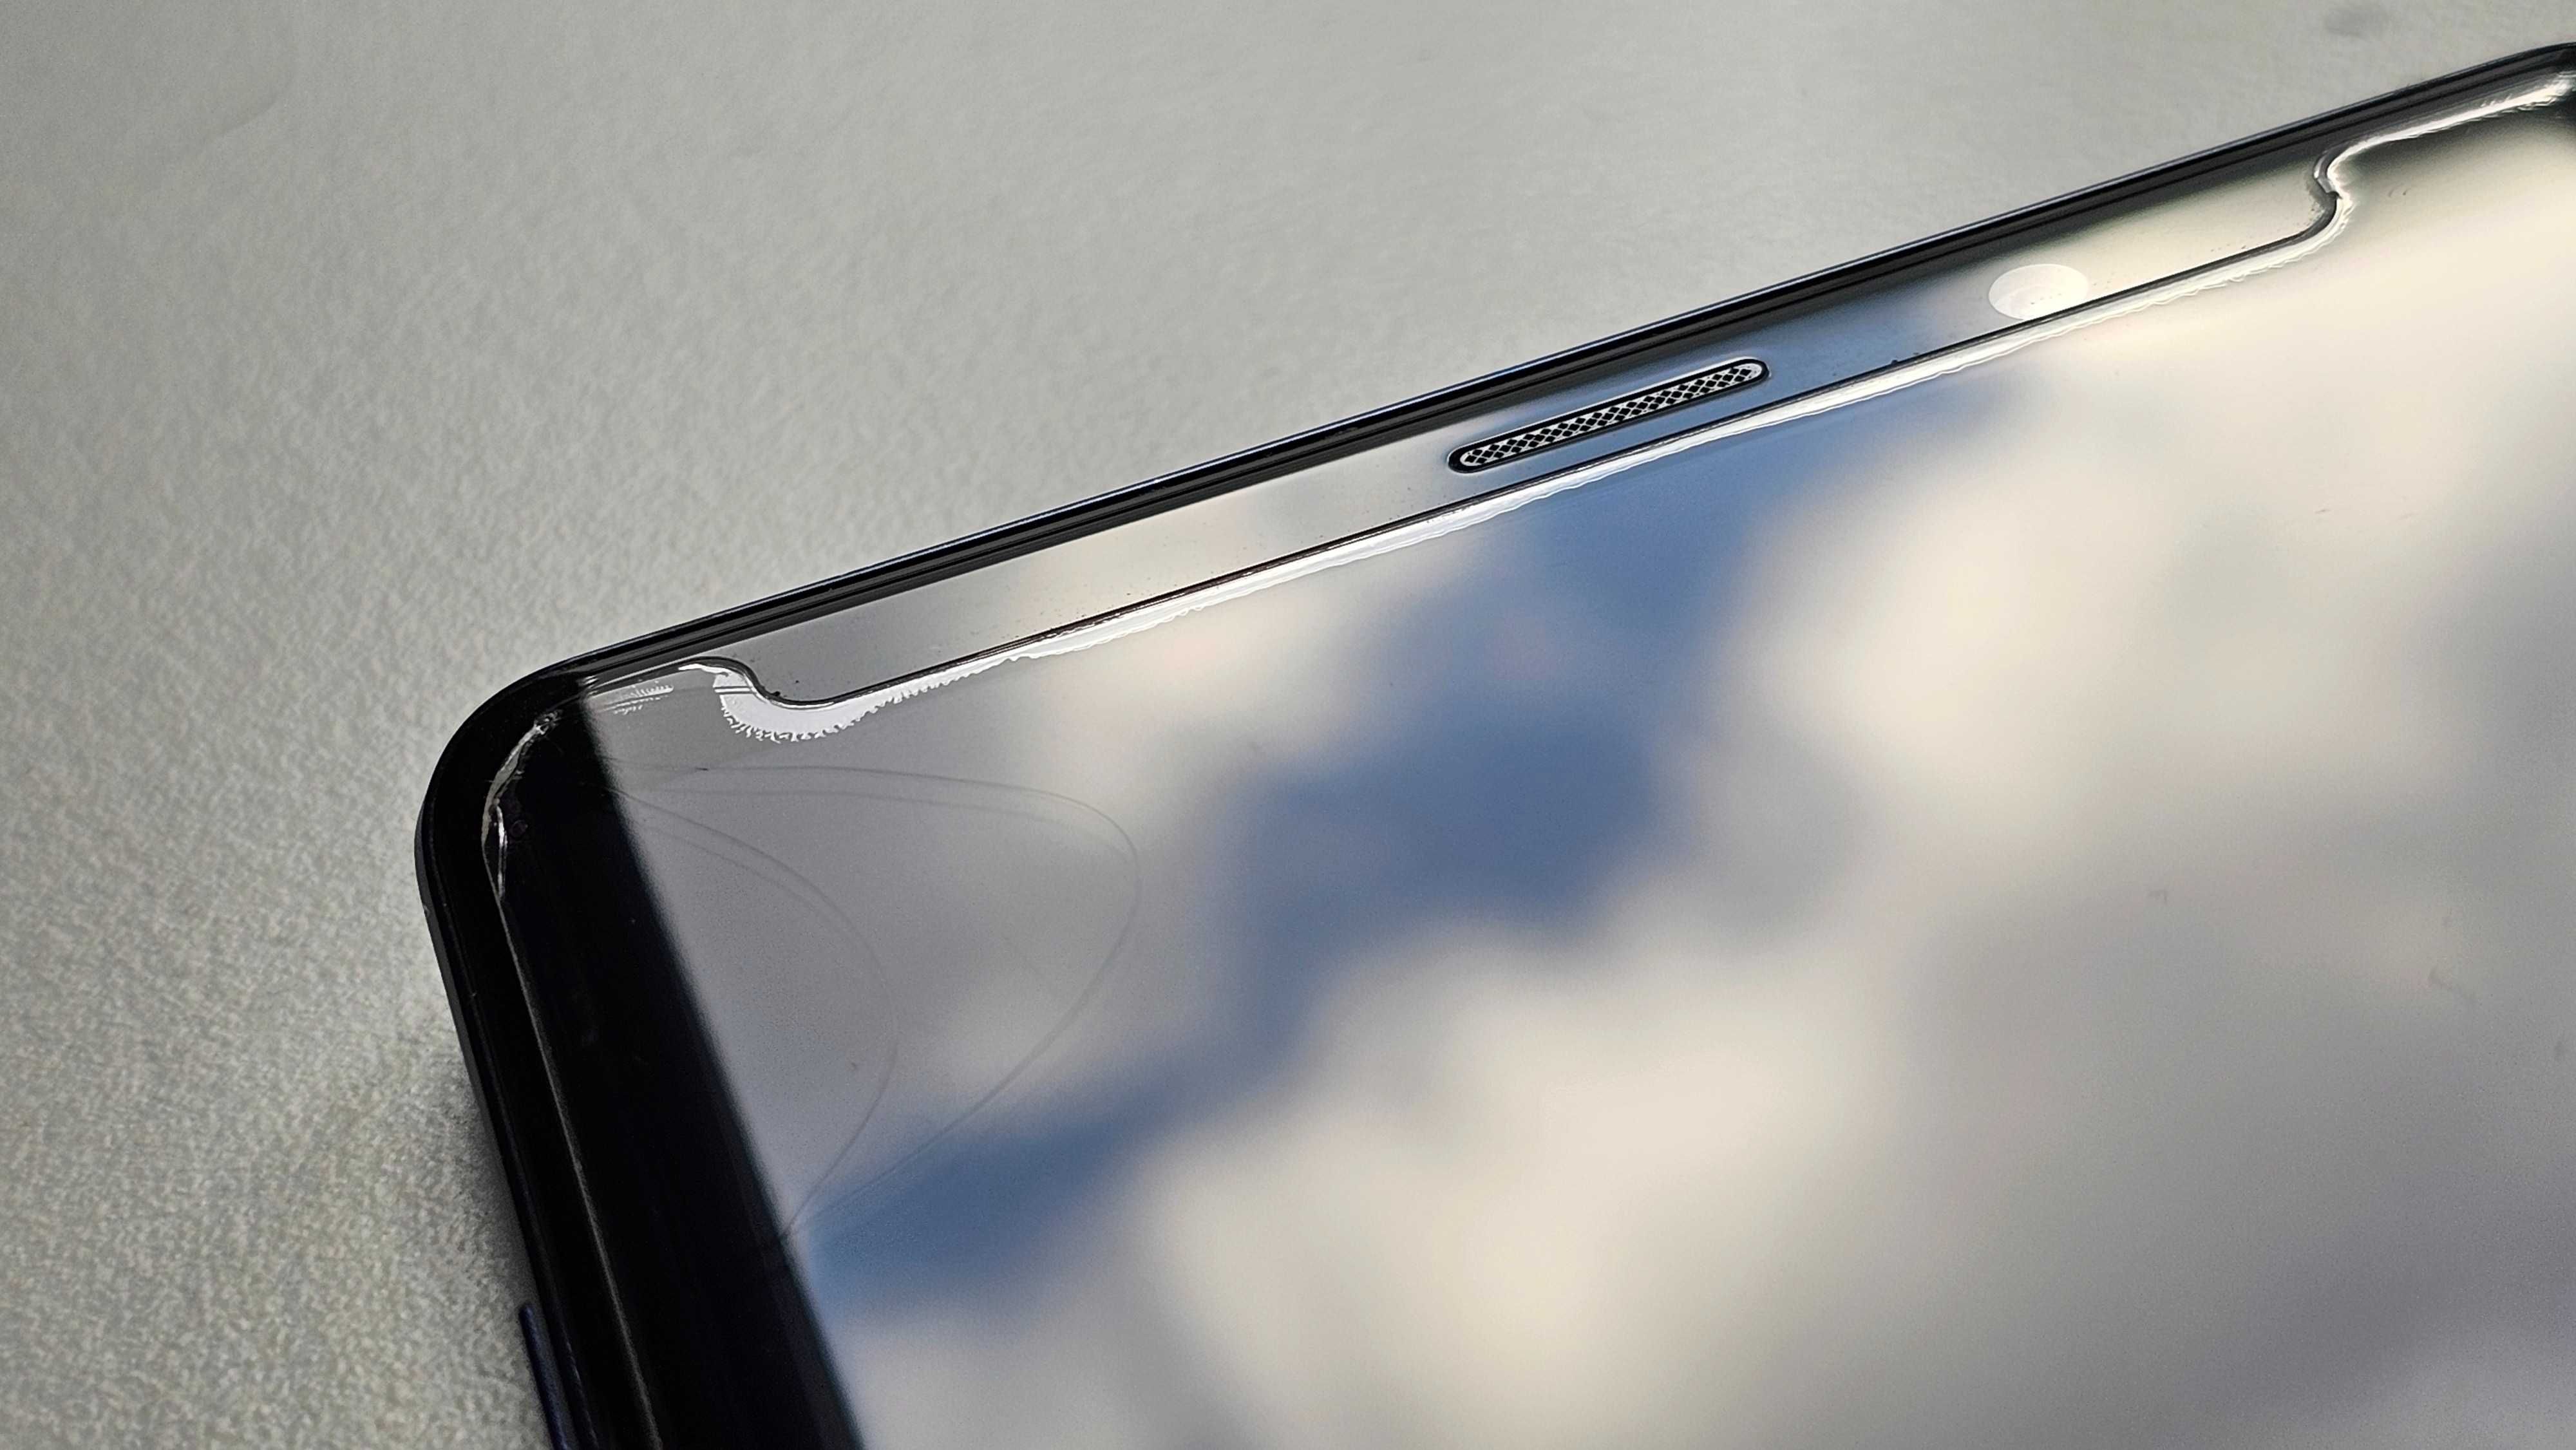 Samsung Galaxy Note 9 SM-N960F/DS 8GB 512GB + dwa etui + nowe szkło